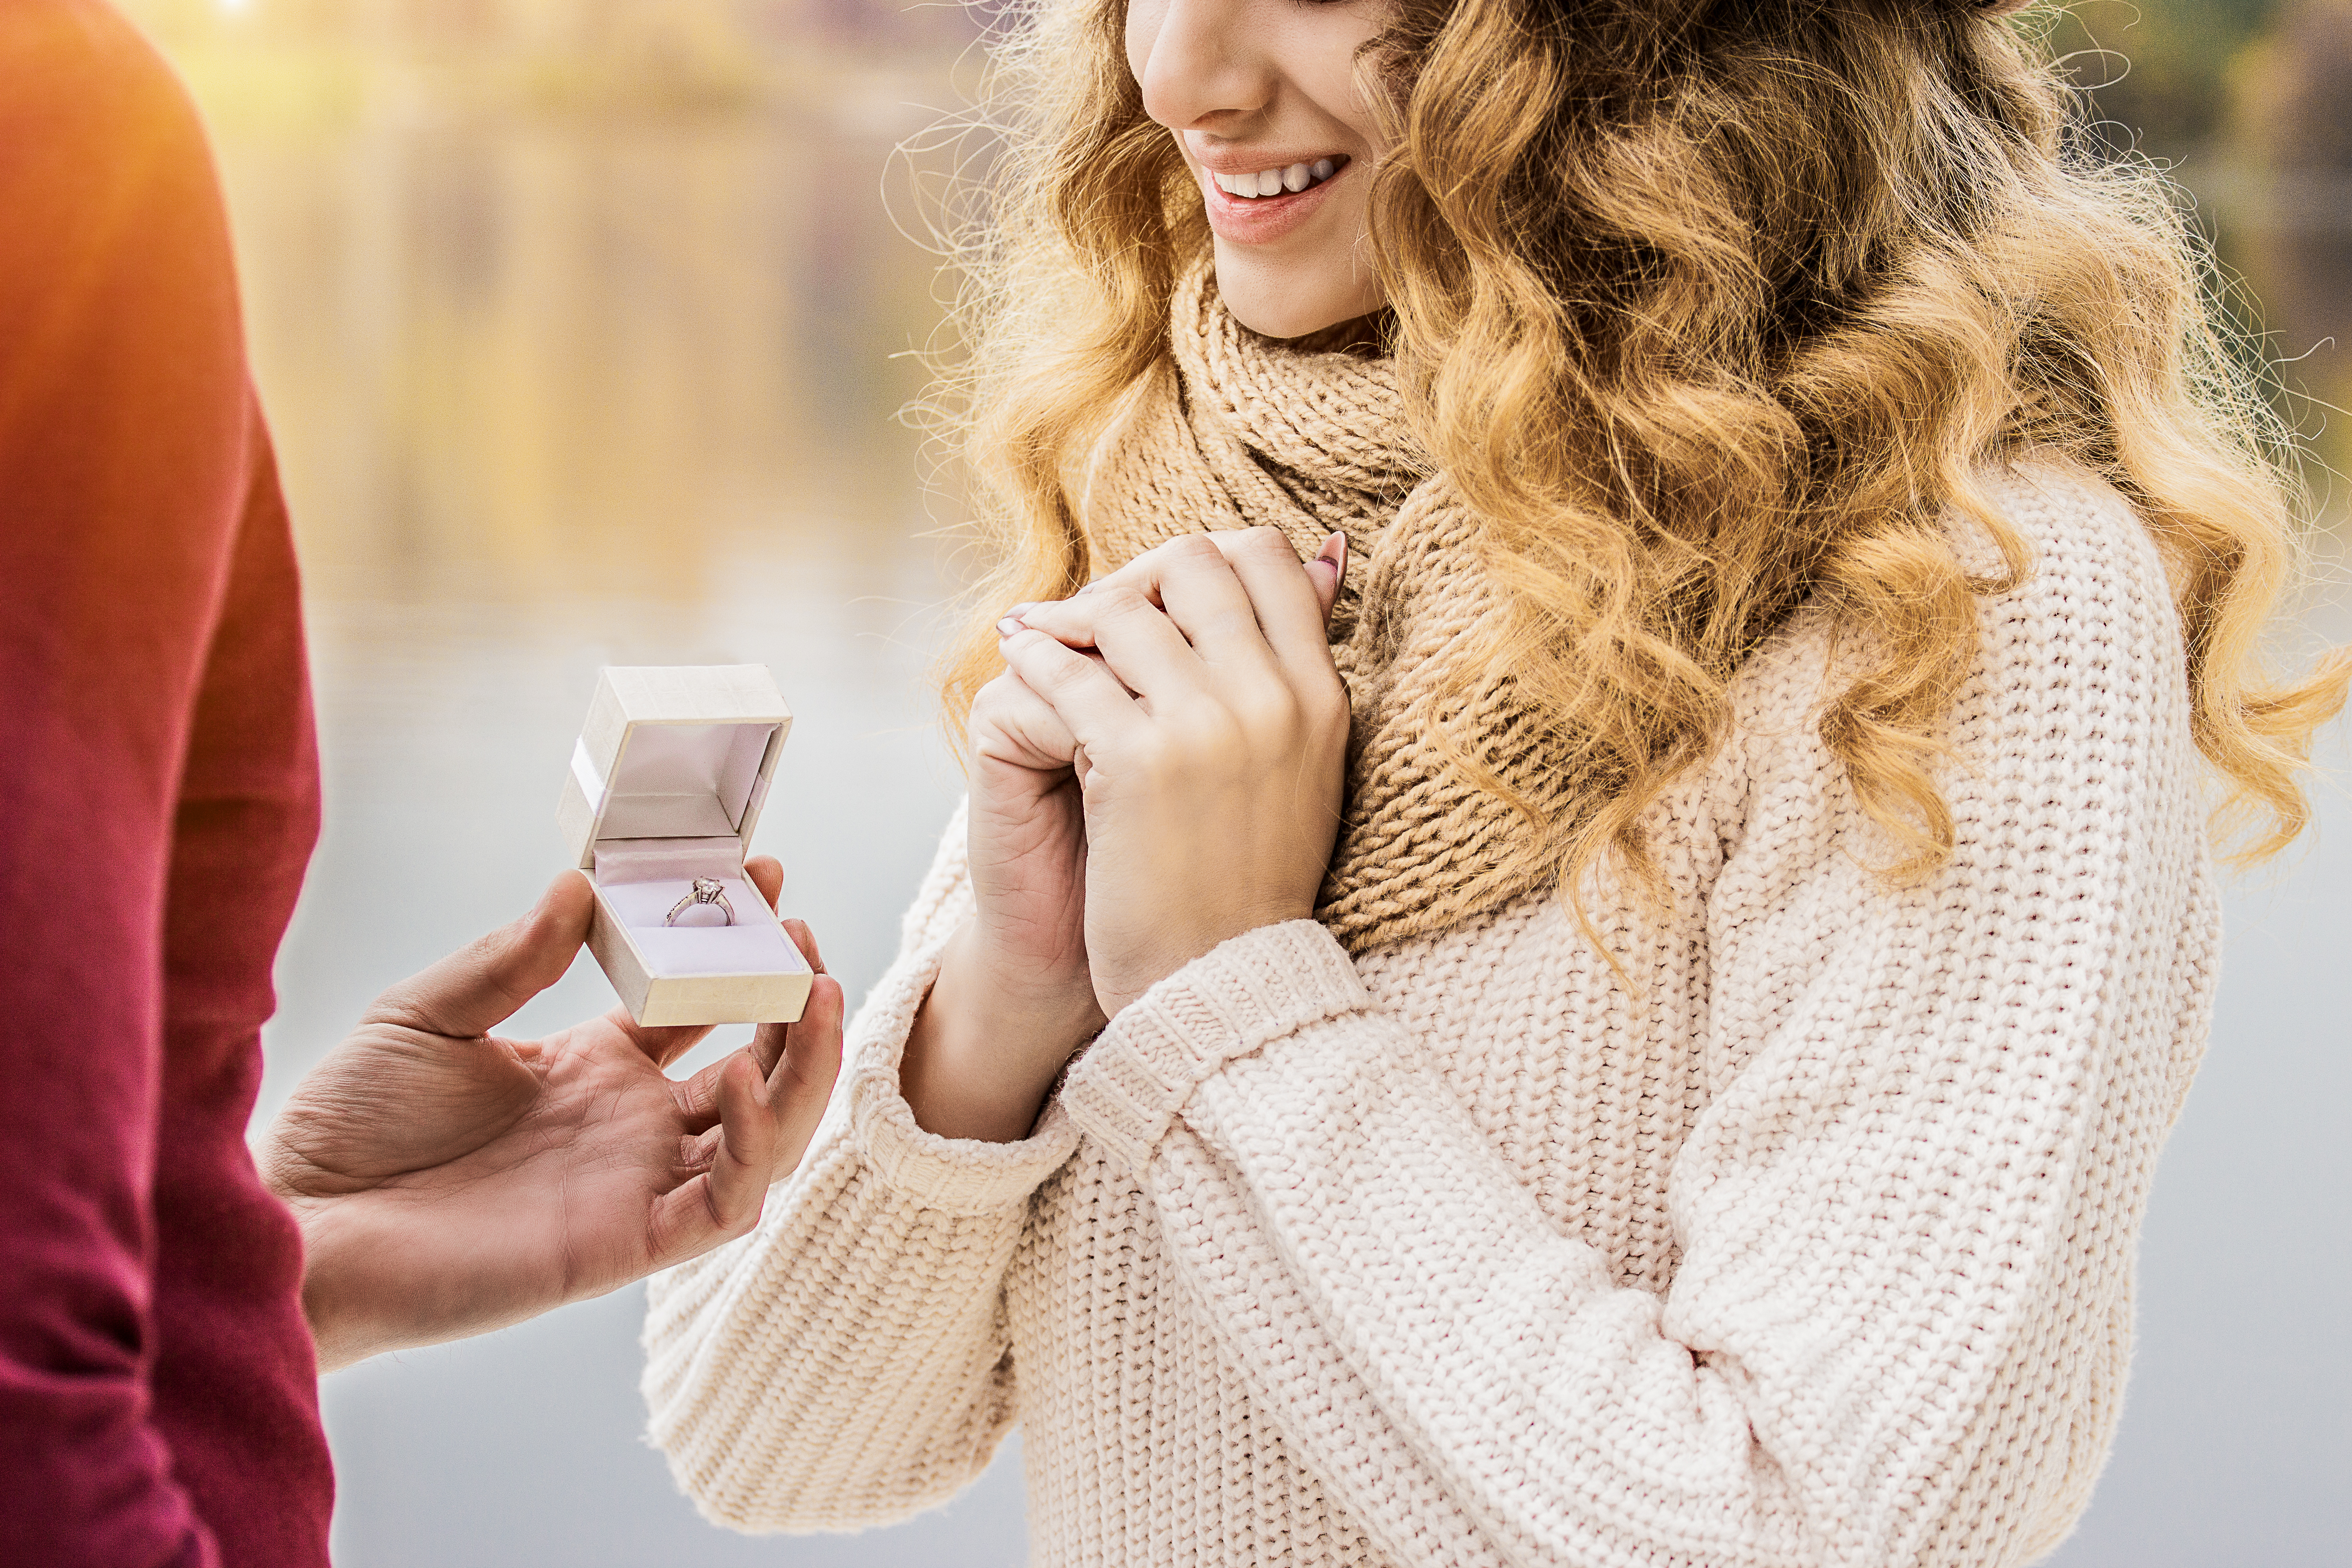 Imagen recortada de un joven pidiéndole matrimonio a su novia | Fuente: Shutterstock